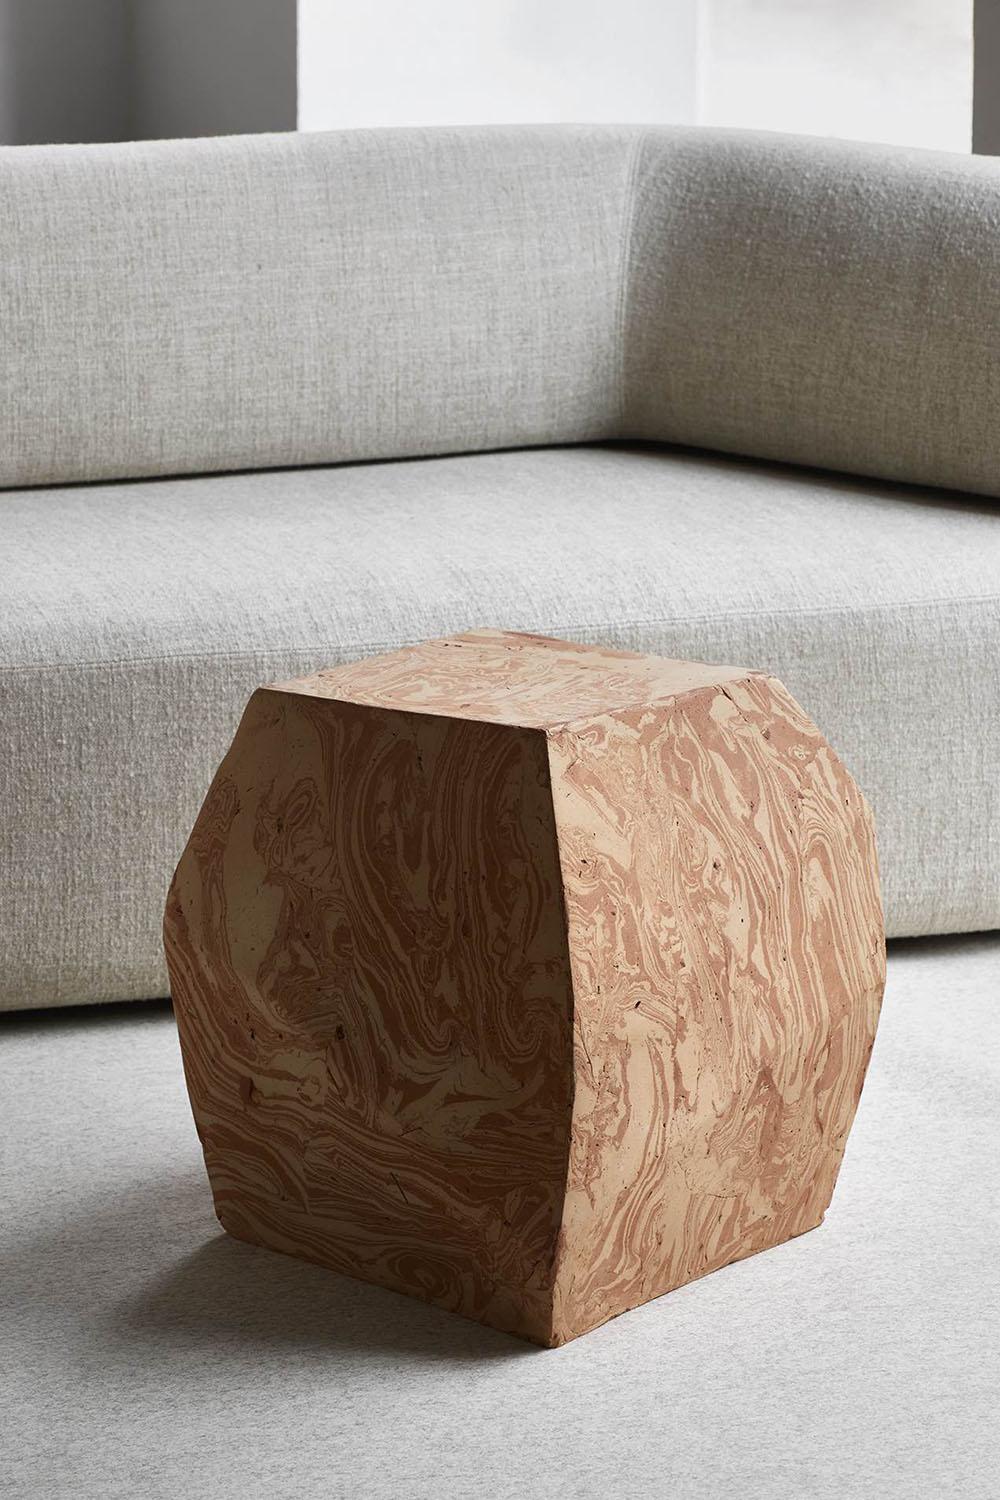 Terra est une table d'appoint au design non conventionnel, créée par Luca Erba pour la marque Collection Particuliere. 
Fabriqué à la main en Italie avec de l'argile mélangée.
Terra présente un design géométrique brut, montrant la solidité que